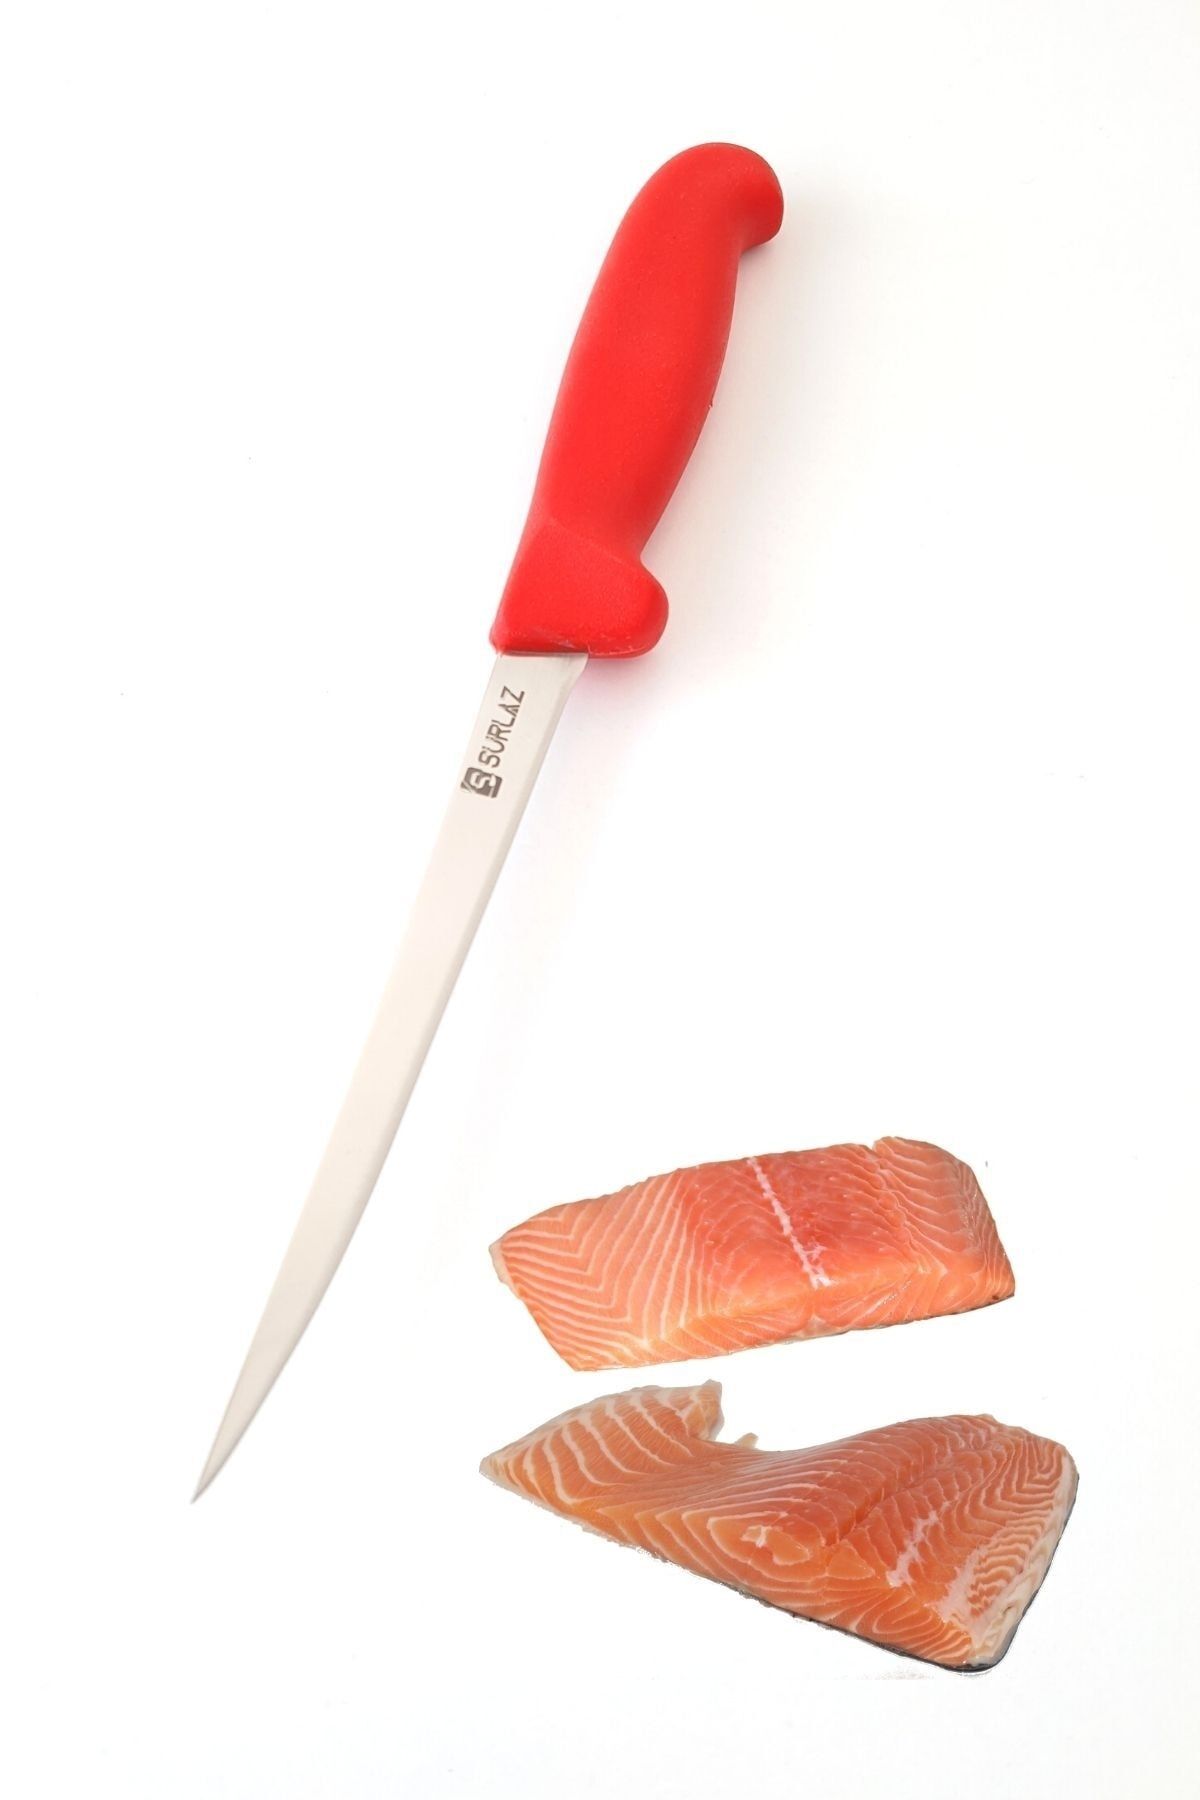 SürLaz Fileto Bıçağı Özel Üretim Balık Fileto Bıçağı